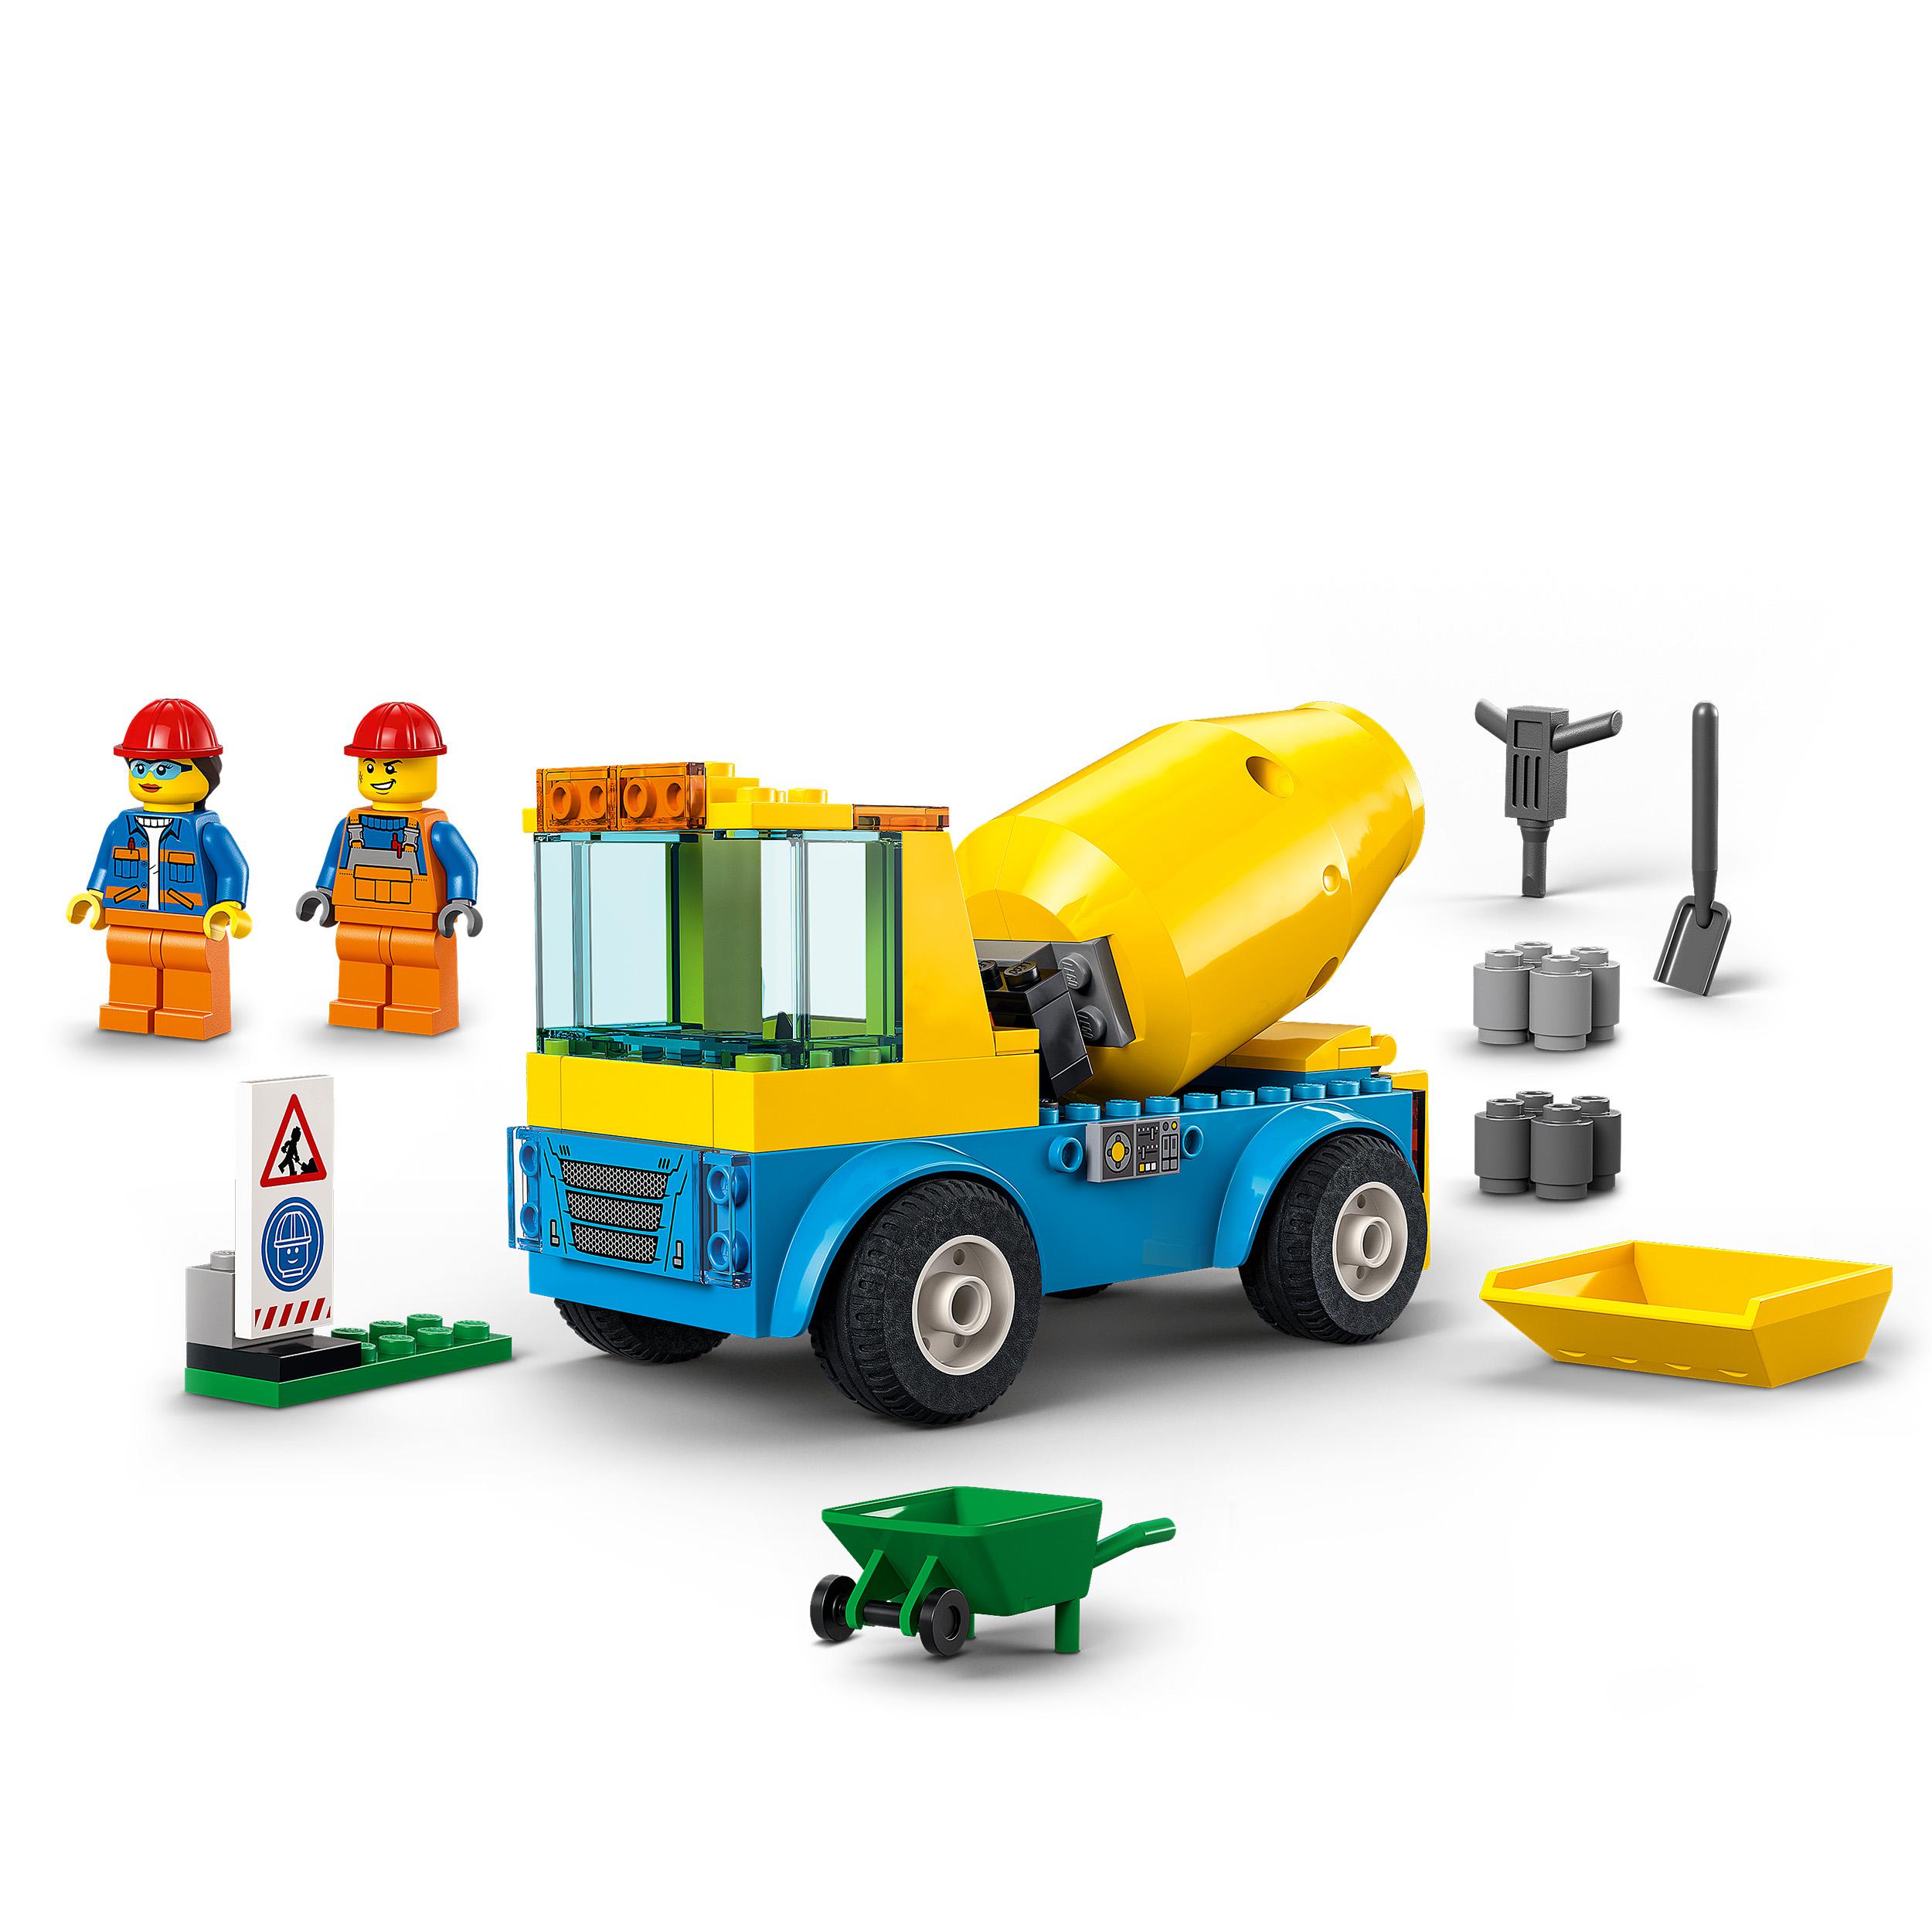 LEGO City Great Vehicles Autobetoniera, Camion Giocattolo, Giochi per Bambini da 60325, , large